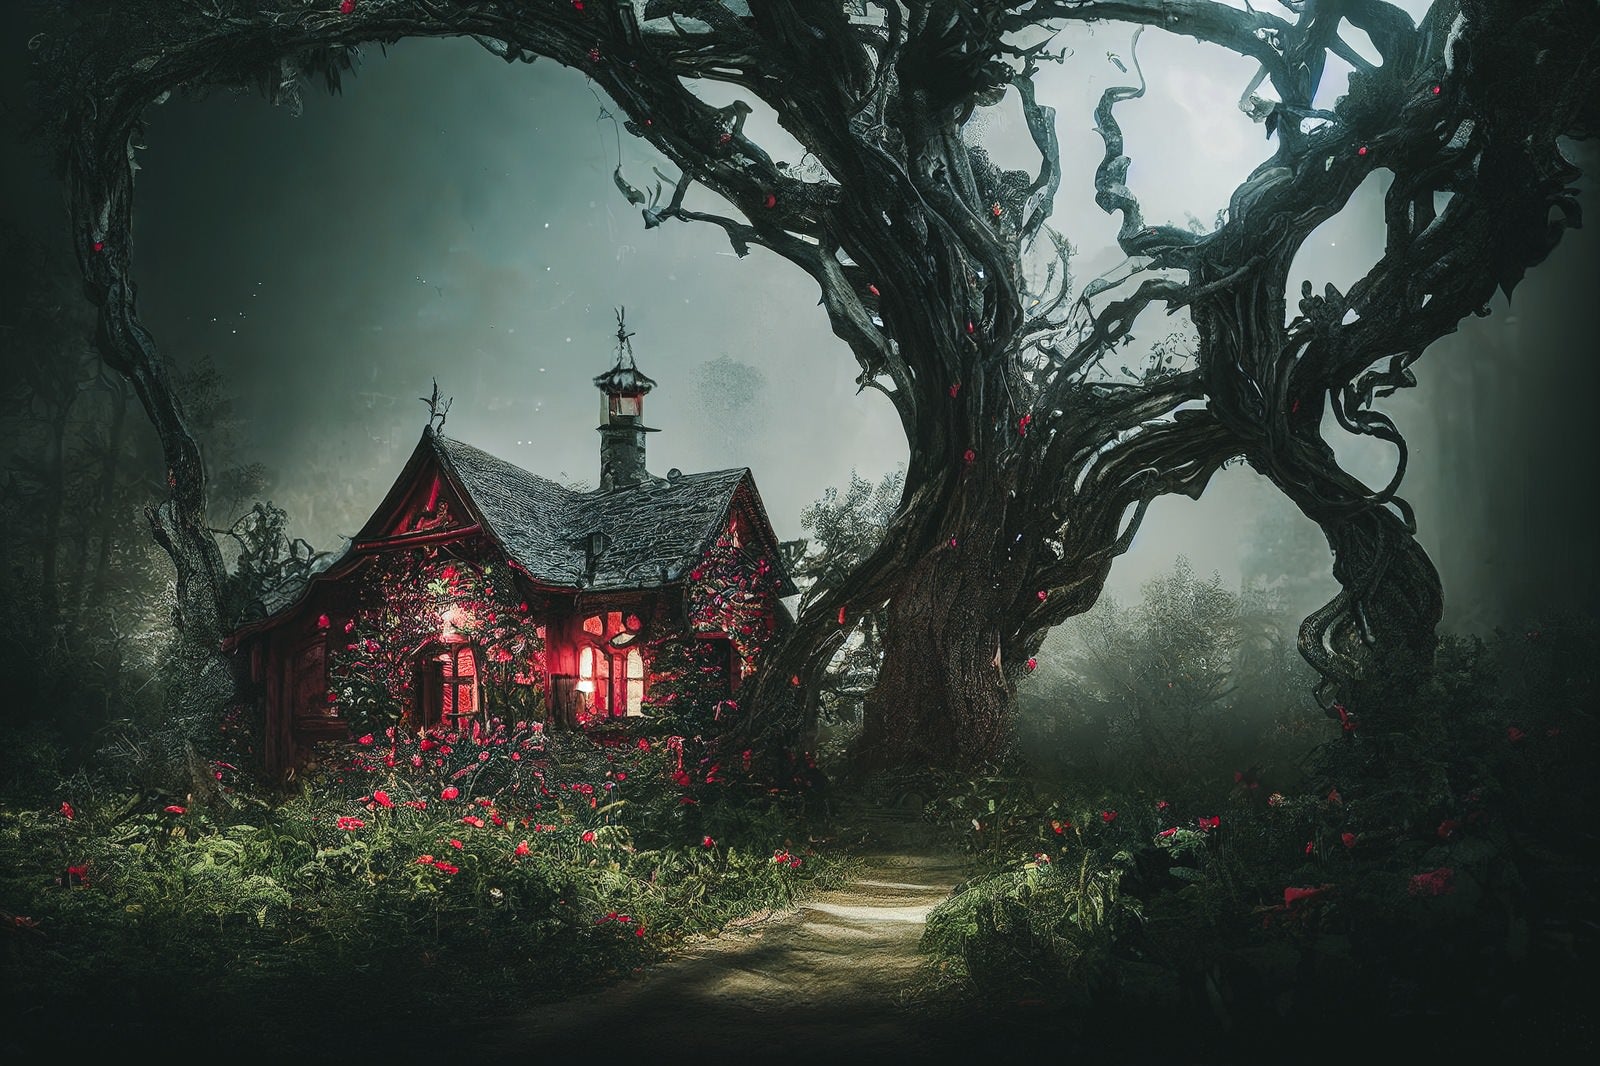 「森を守る巨木と魔女の家」の写真